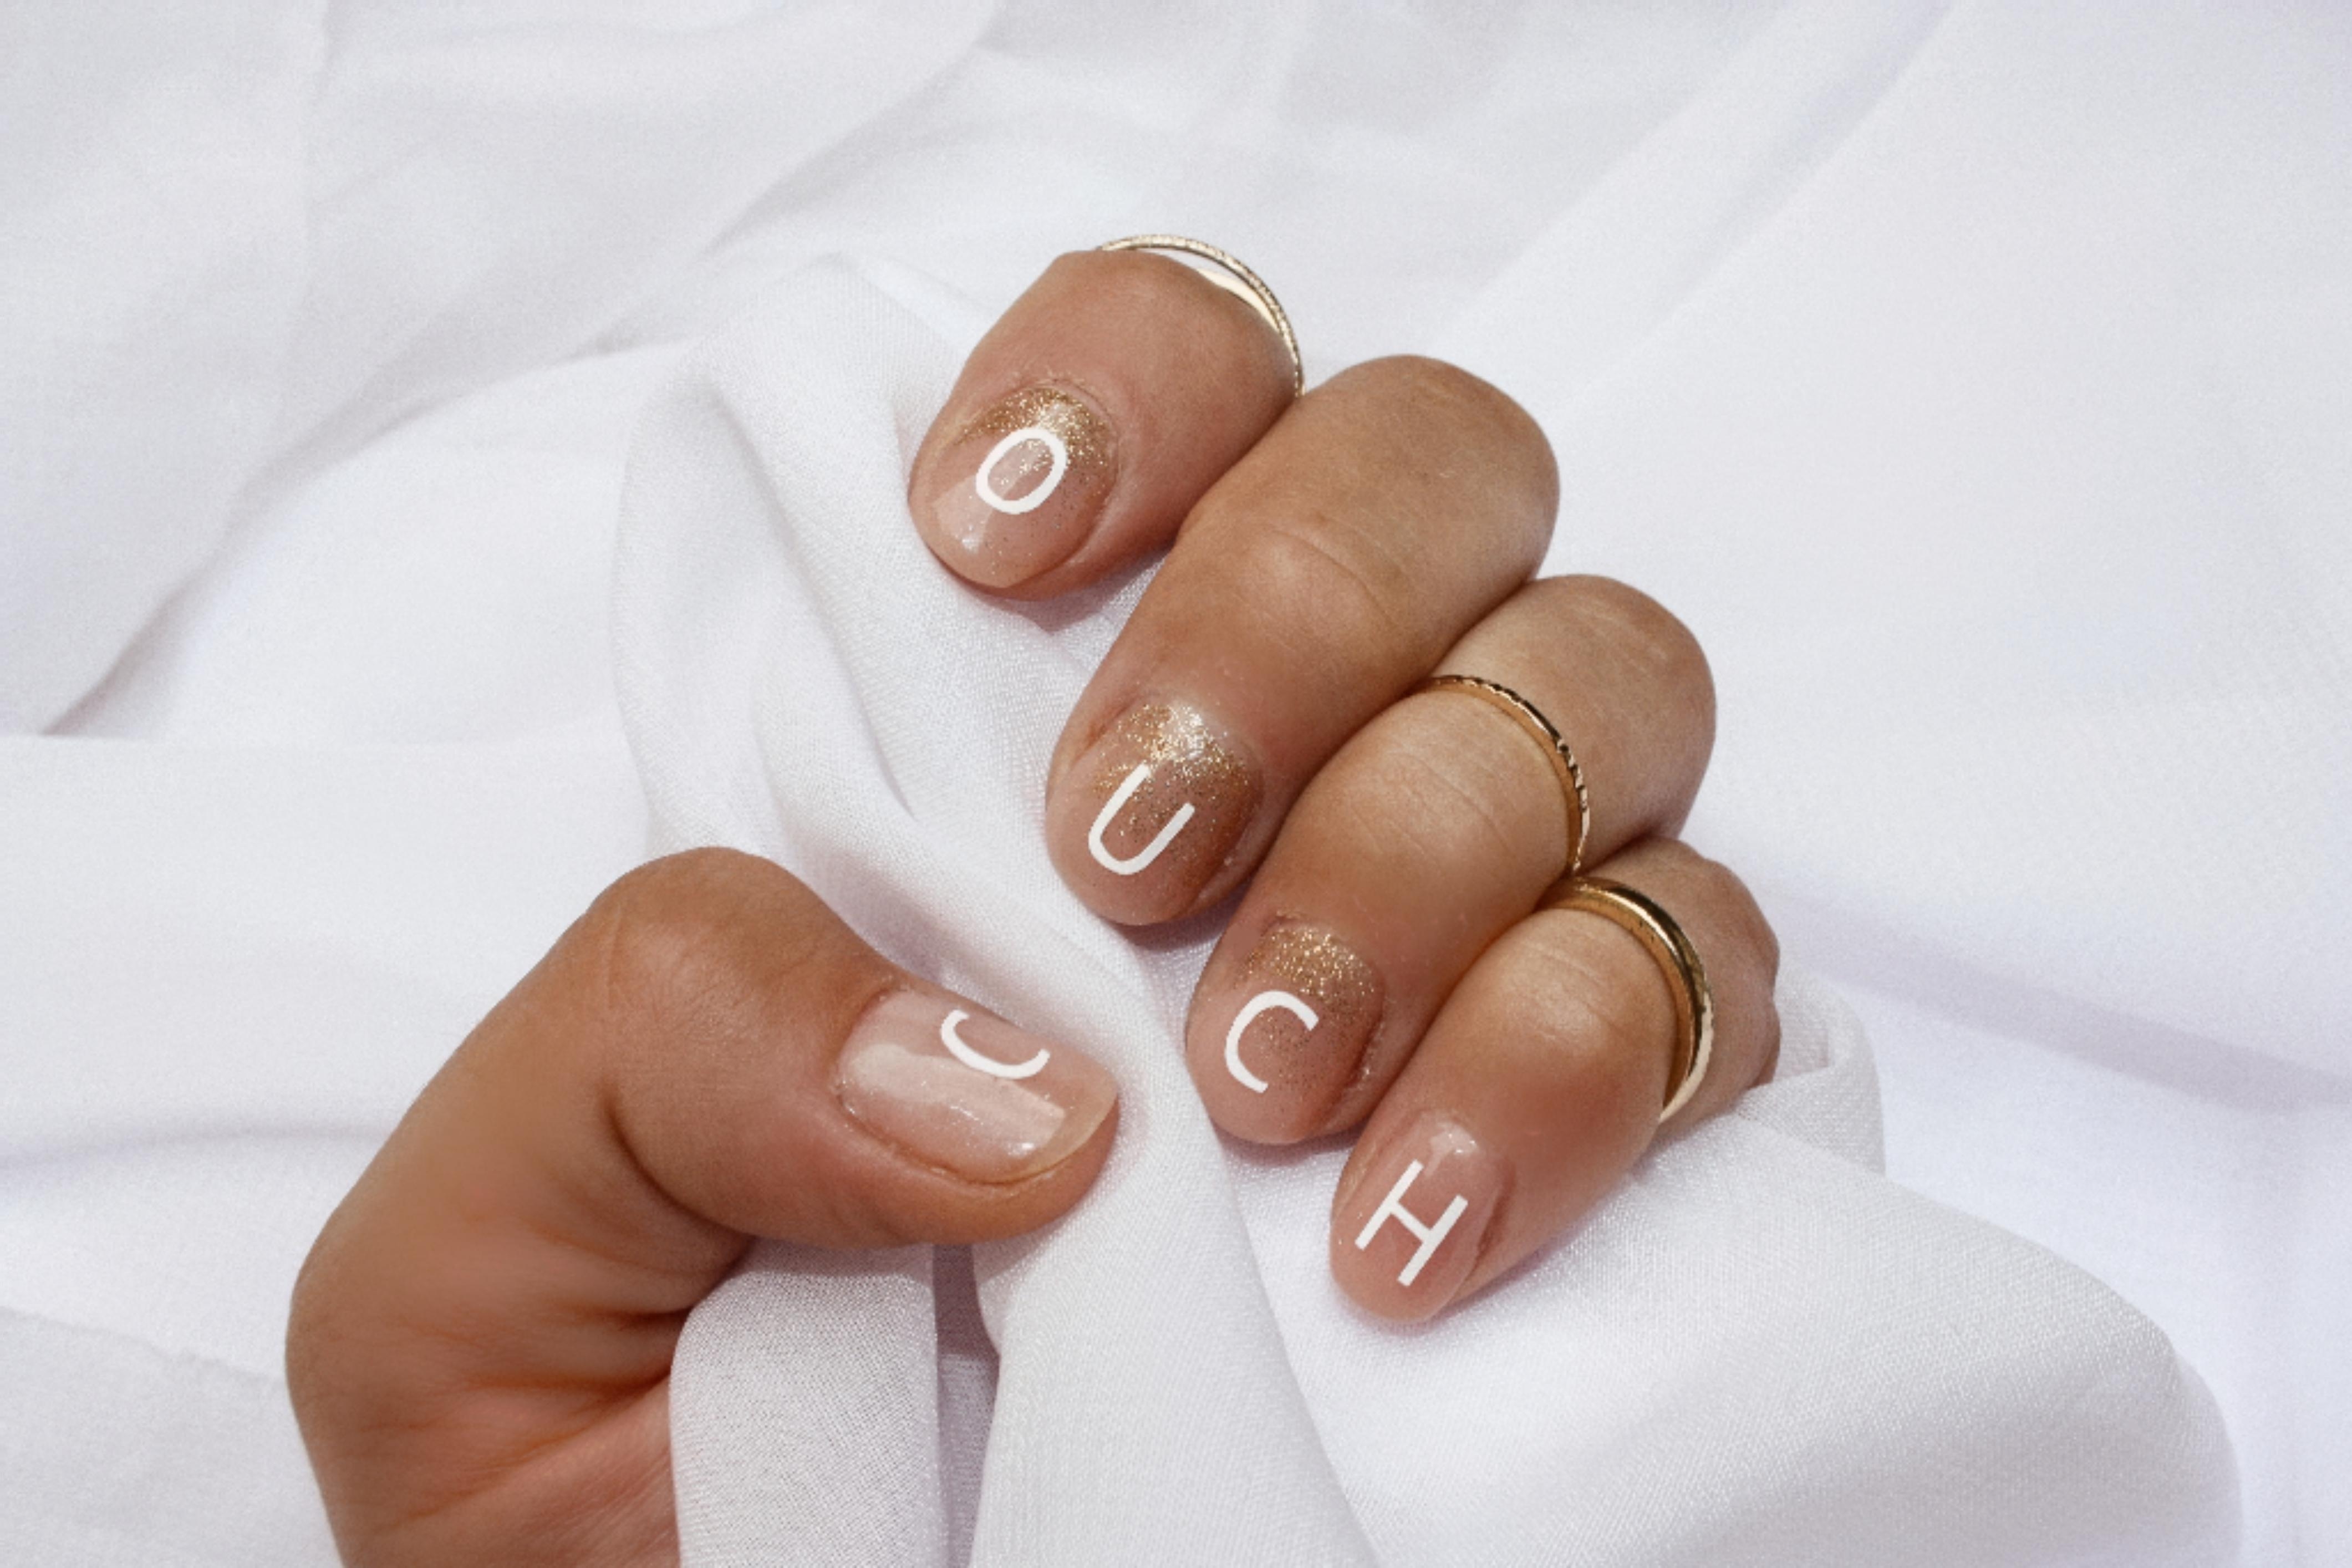 #Plotter trifft #Nägel 

#nails #nailart #fashionbeautychallenge #beauty #beautyliebling #plotten #nägellack #diy